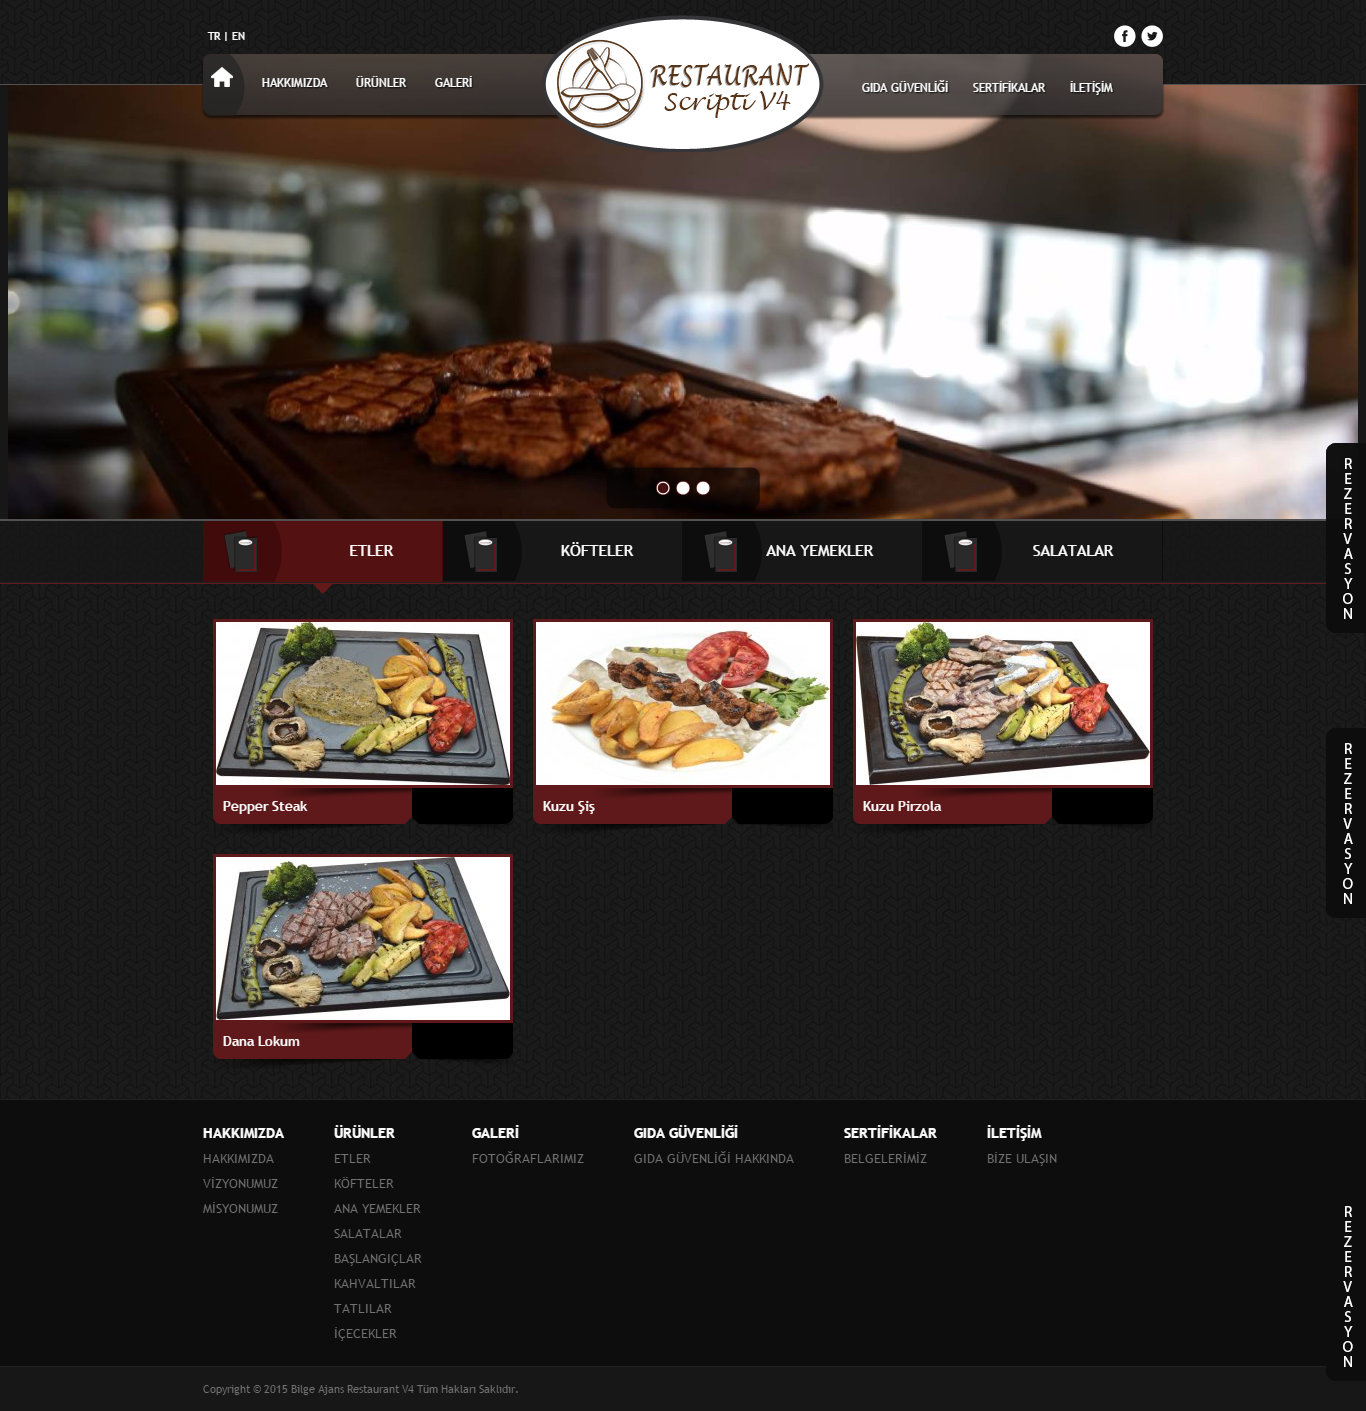 Bilge Ajans Restaurant V4 Tasarımı